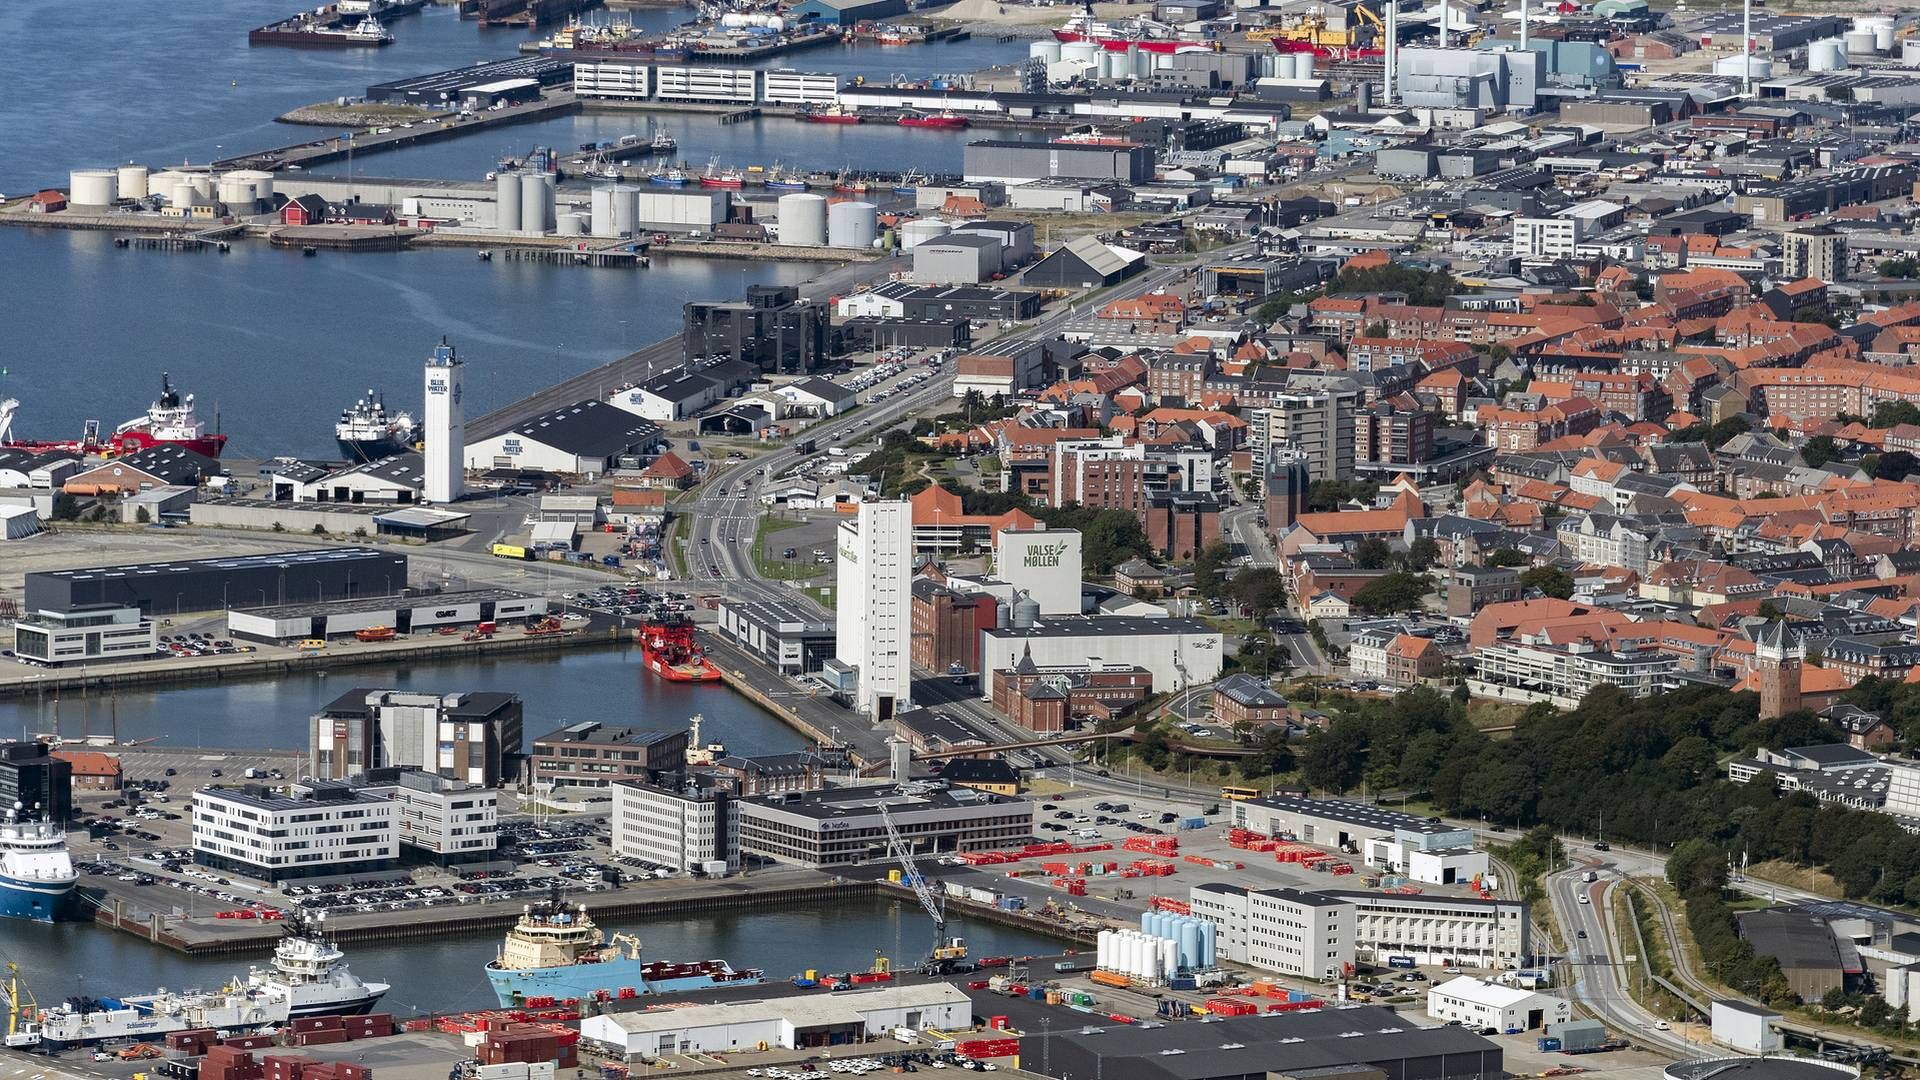 Den rådgivende ingeniørvirksomhed Ingeniør’ne, der blev grundlagt i 1972, har hovedsæde her i Esbjerg. | Foto: ESBJERG KOMMUNE PR